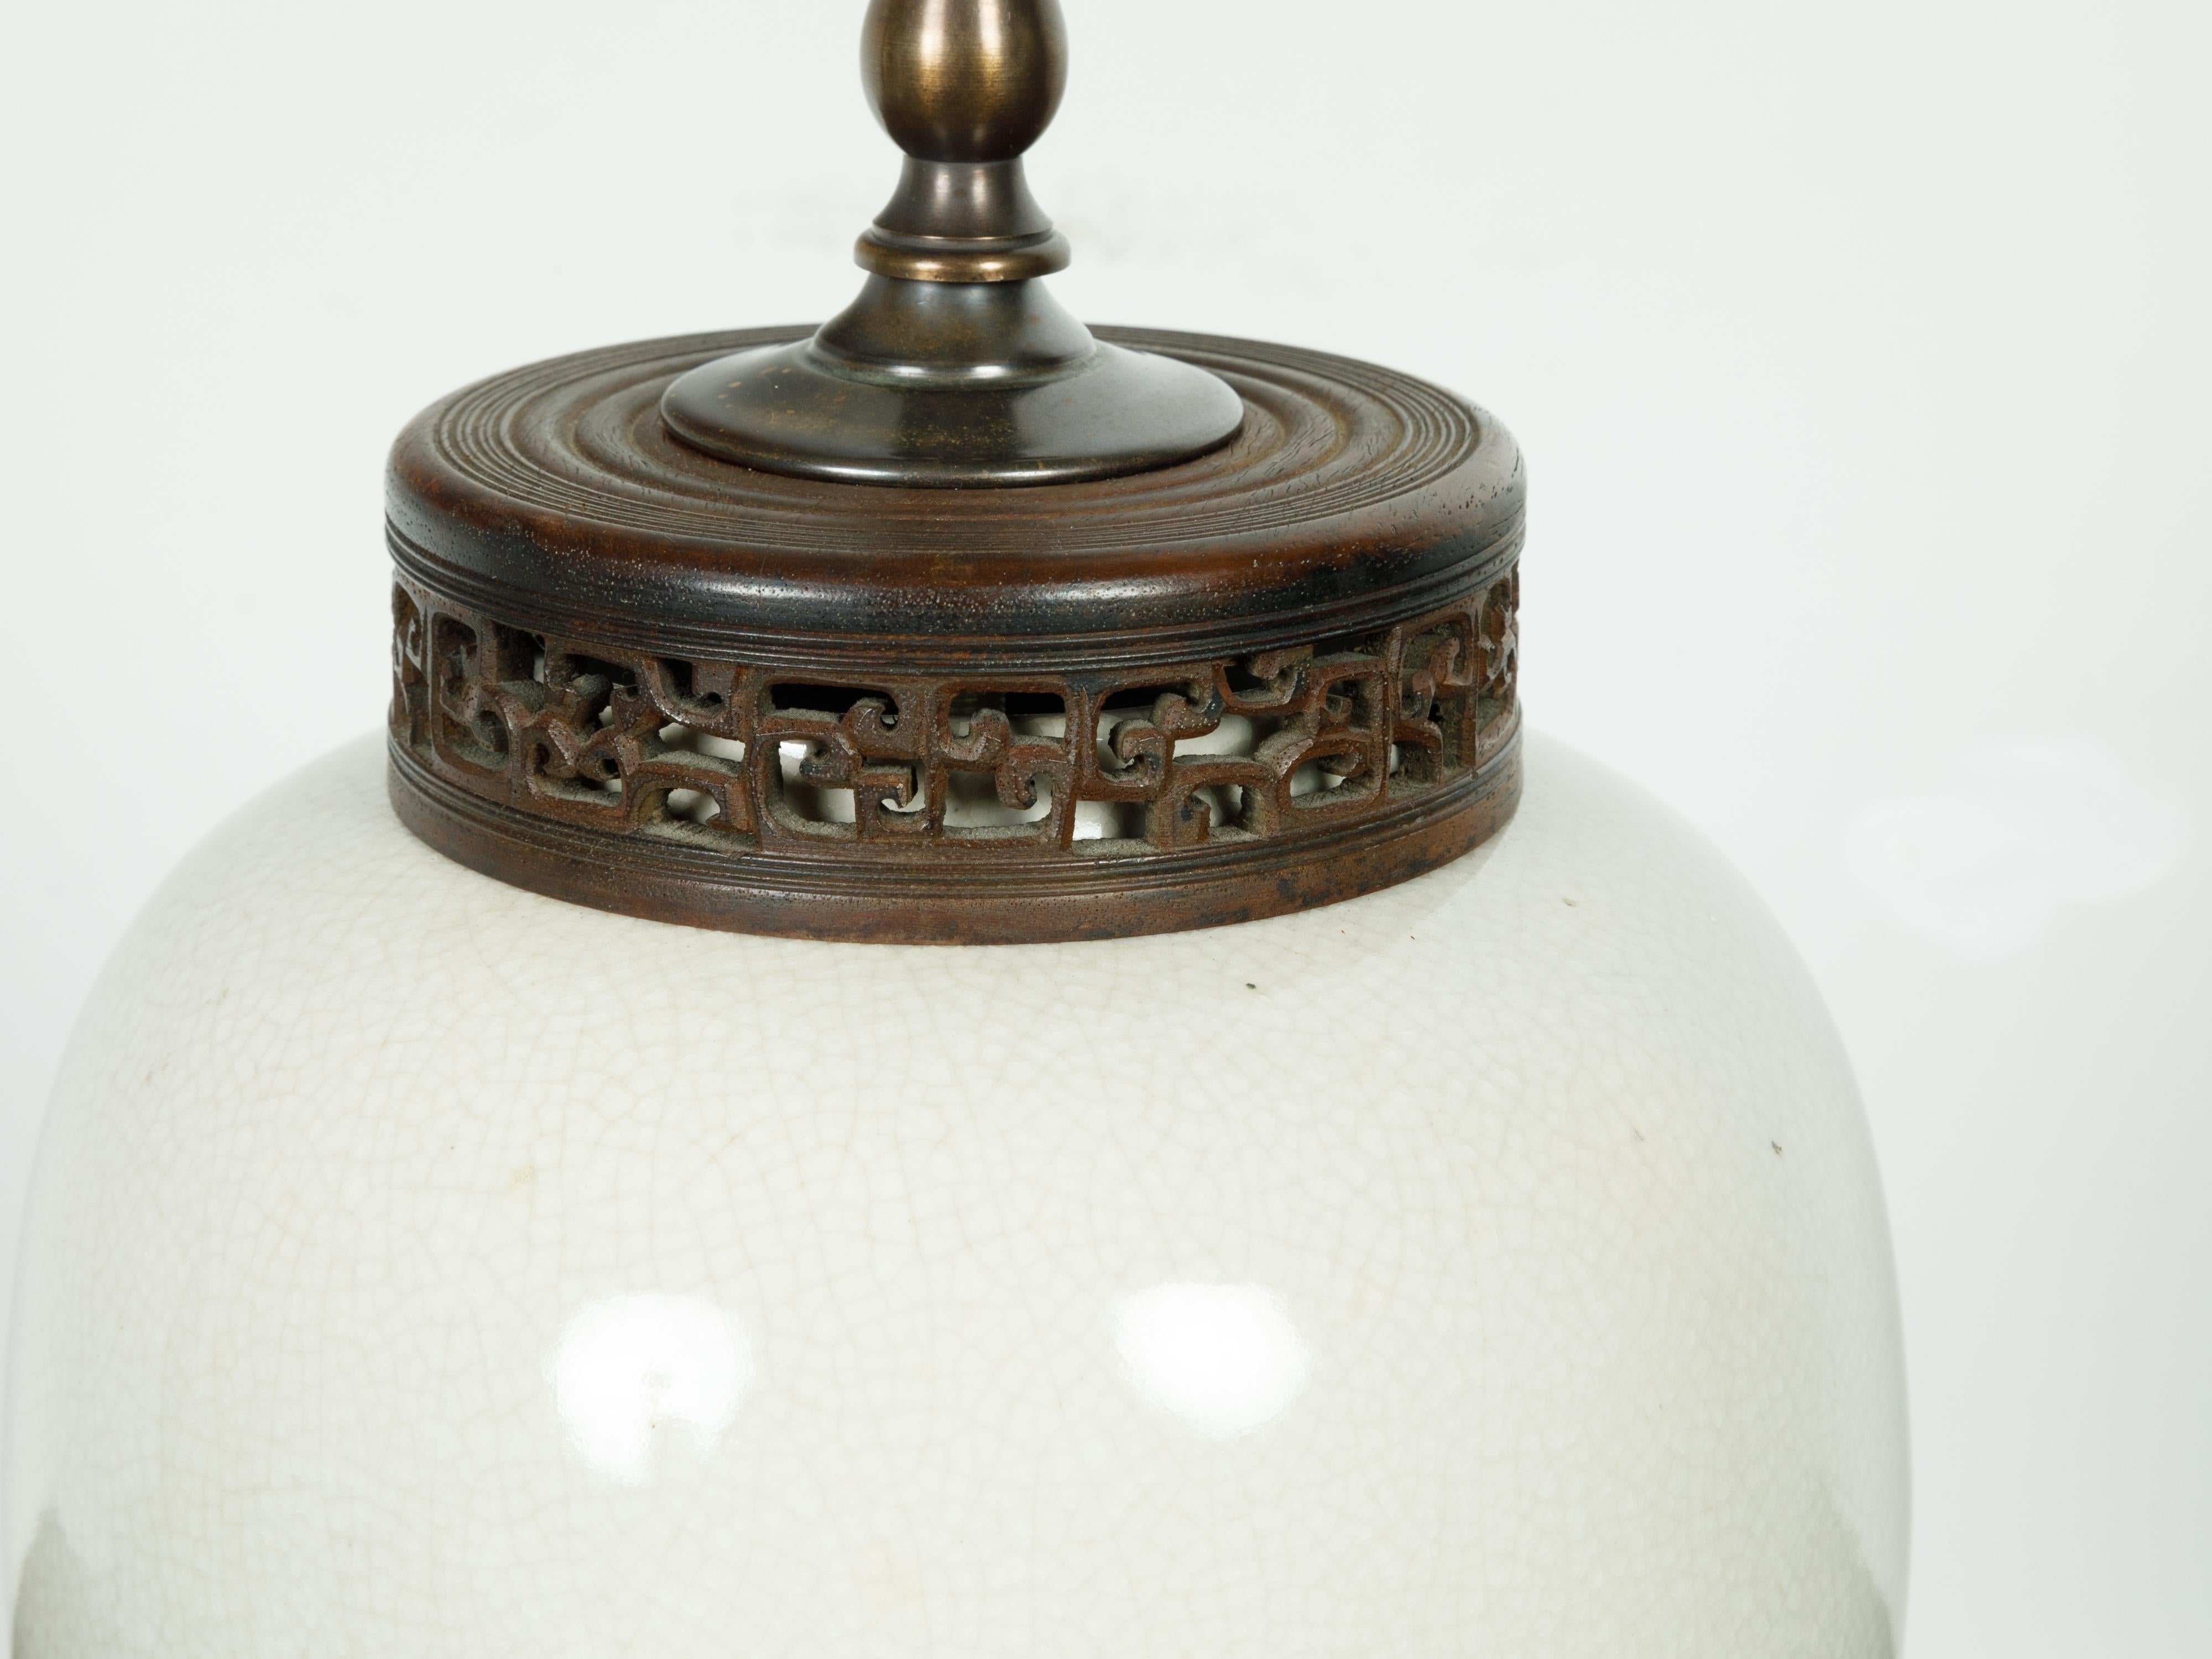 Lampe de table vintage japonaise du milieu du 20e siècle, avec finition craquelée et base en lucite. Créée au Japon au milieu du siècle dernier, cette lampe de table présente un vase en céramique blanche au glaçage craquelé, surmonté d'un anneau